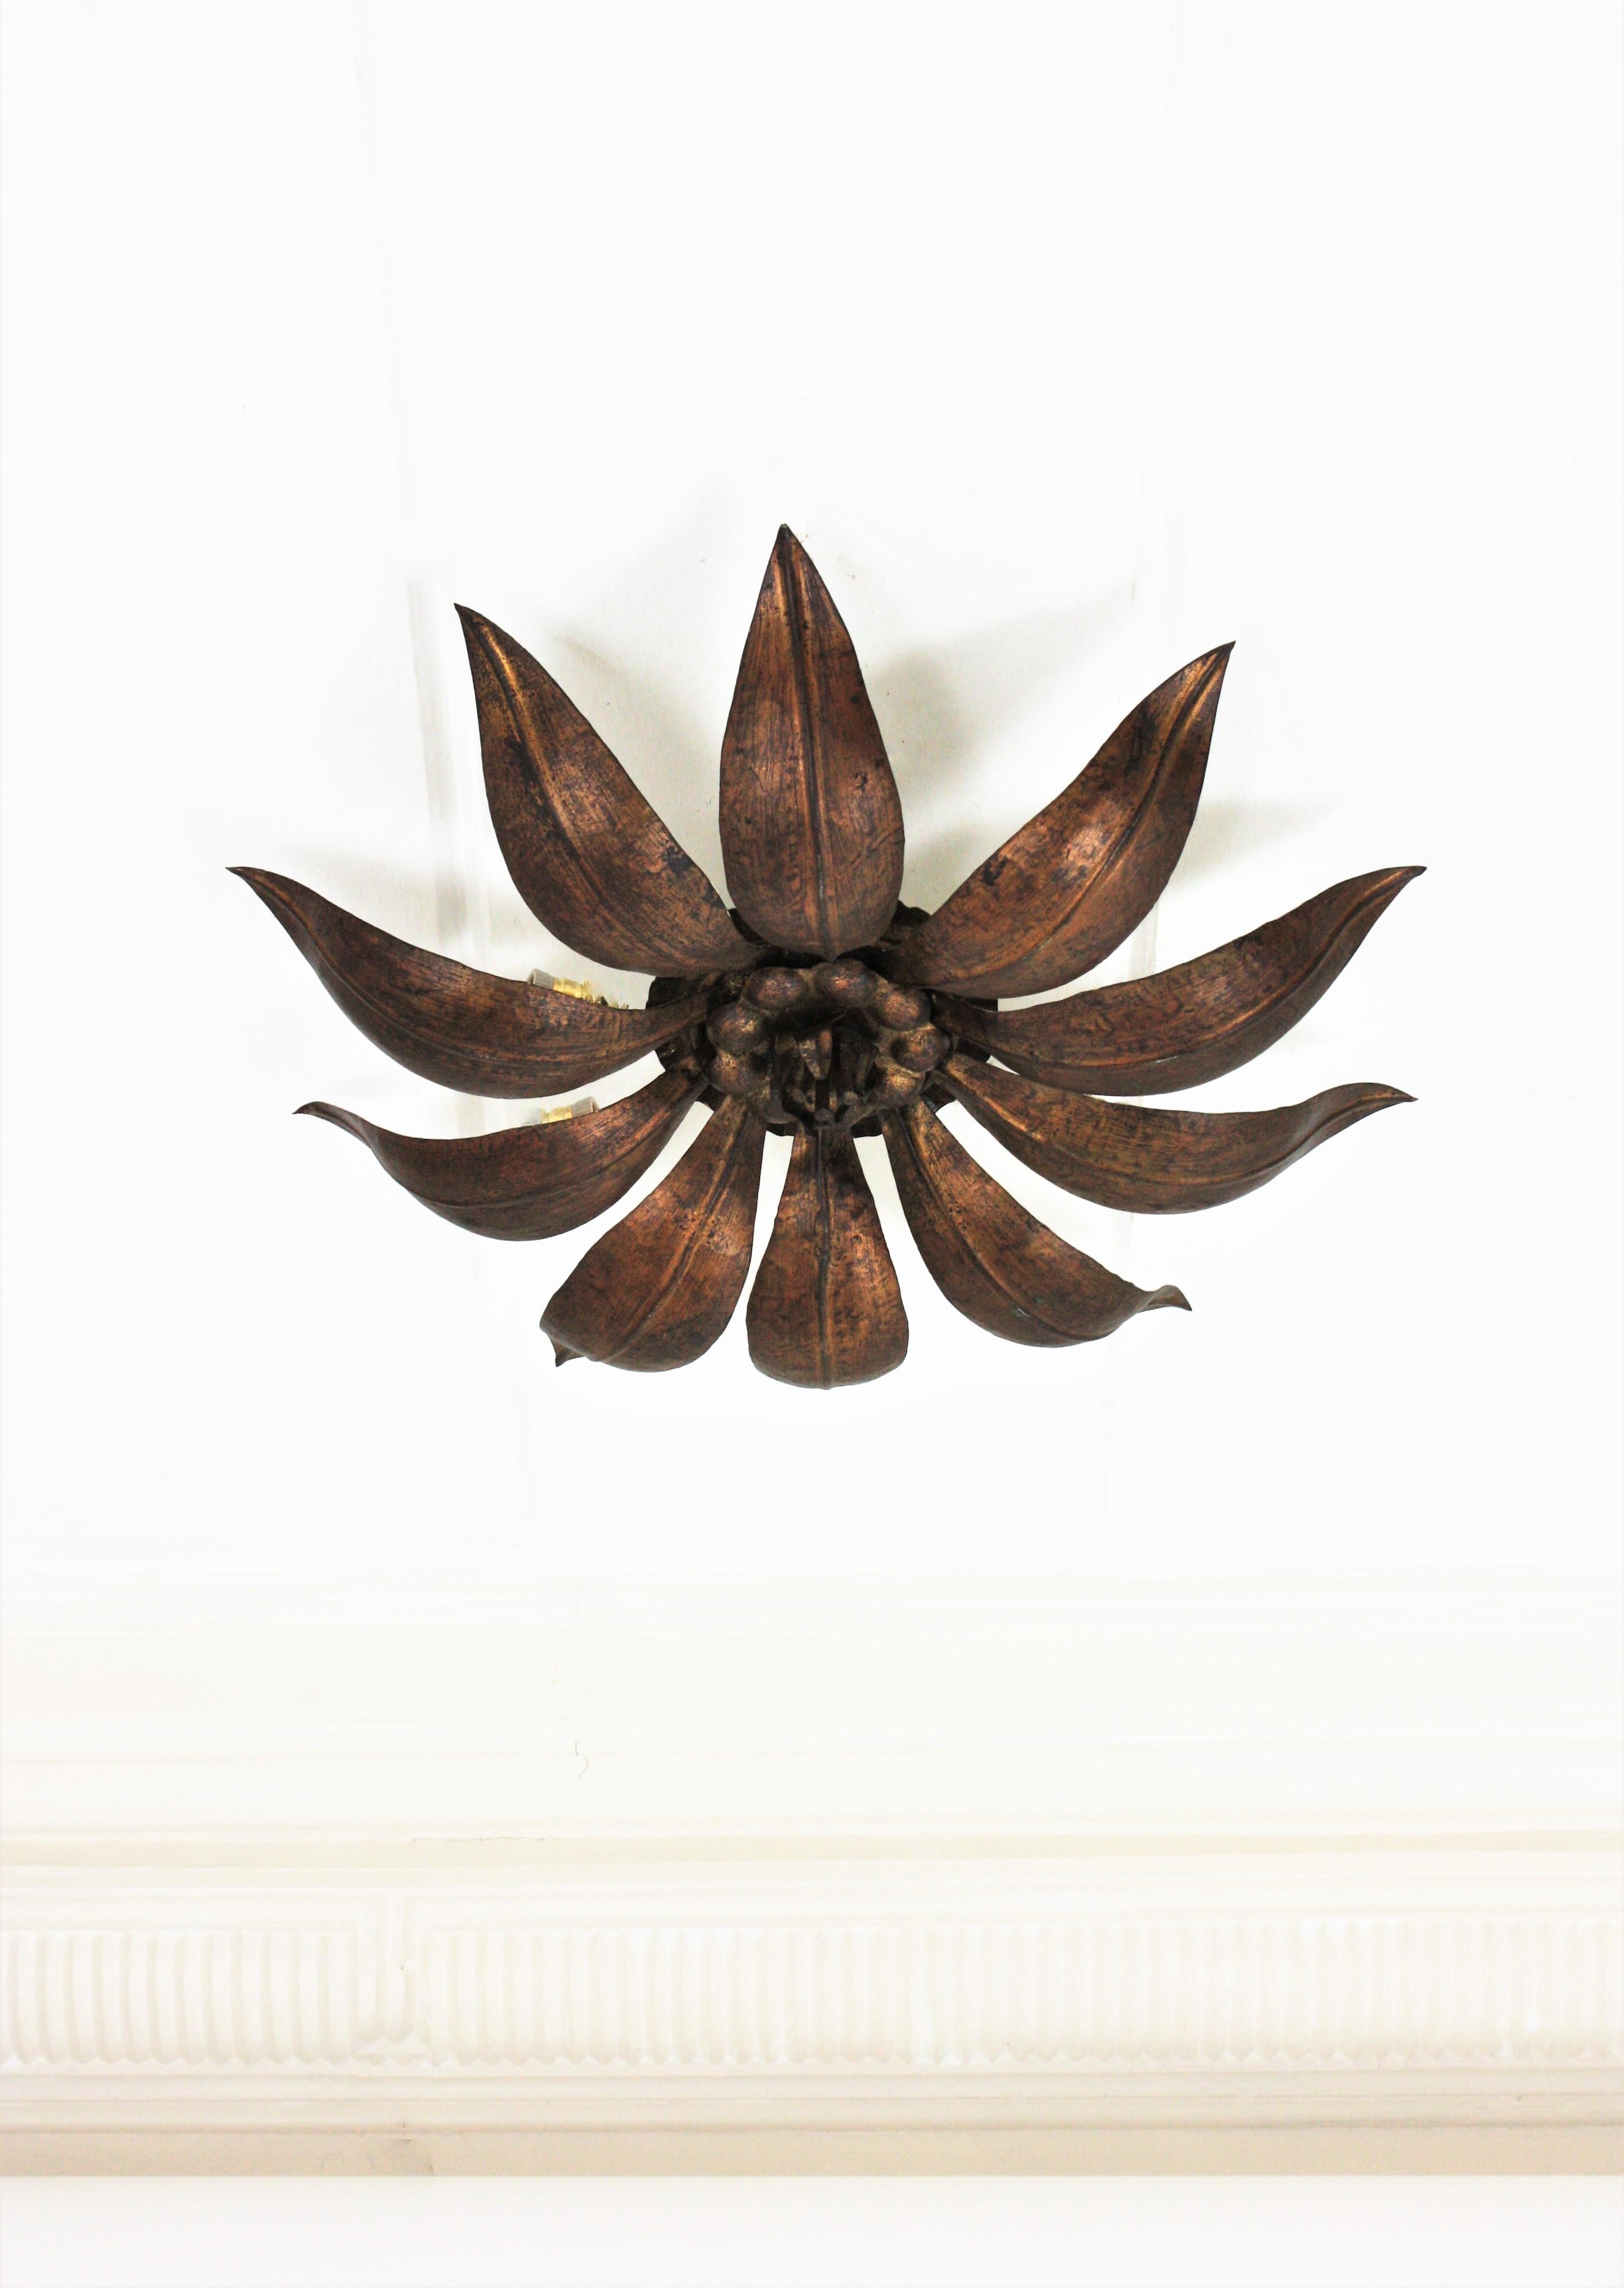 French Sunburst Flower Ceiling Light Fixture in Bronze Gilt Iron, 1940s 5